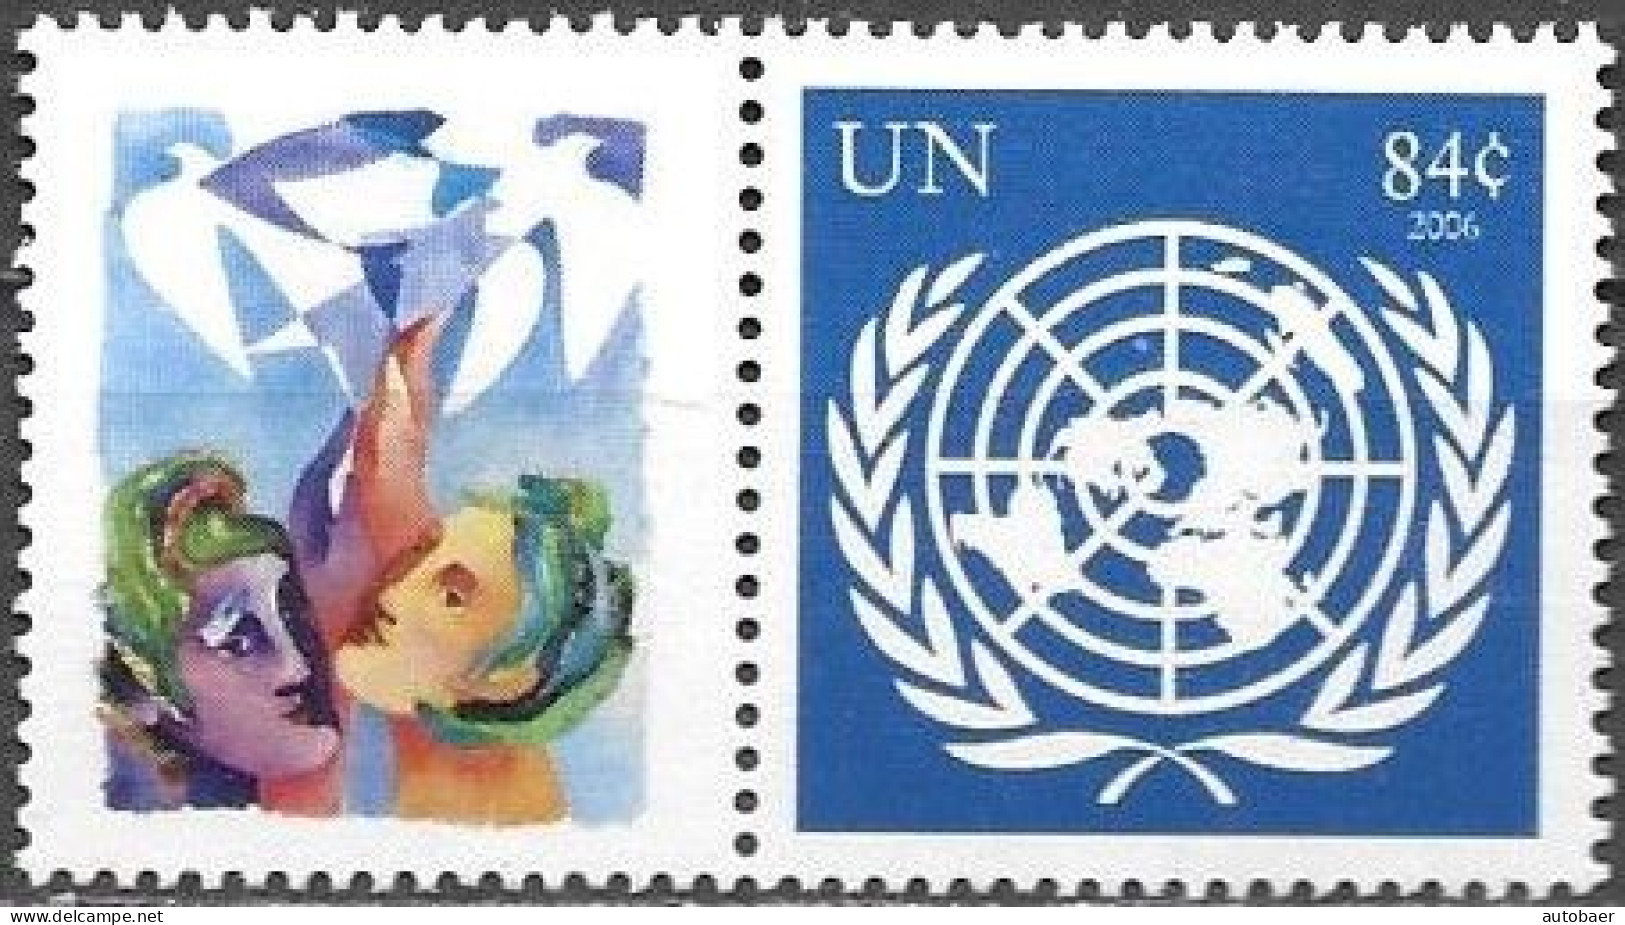 United Nations UNO UN Vereinte Nationen New York 2006 Greetings Mi.No.1032 Label MNH ** Neuf - Ungebraucht